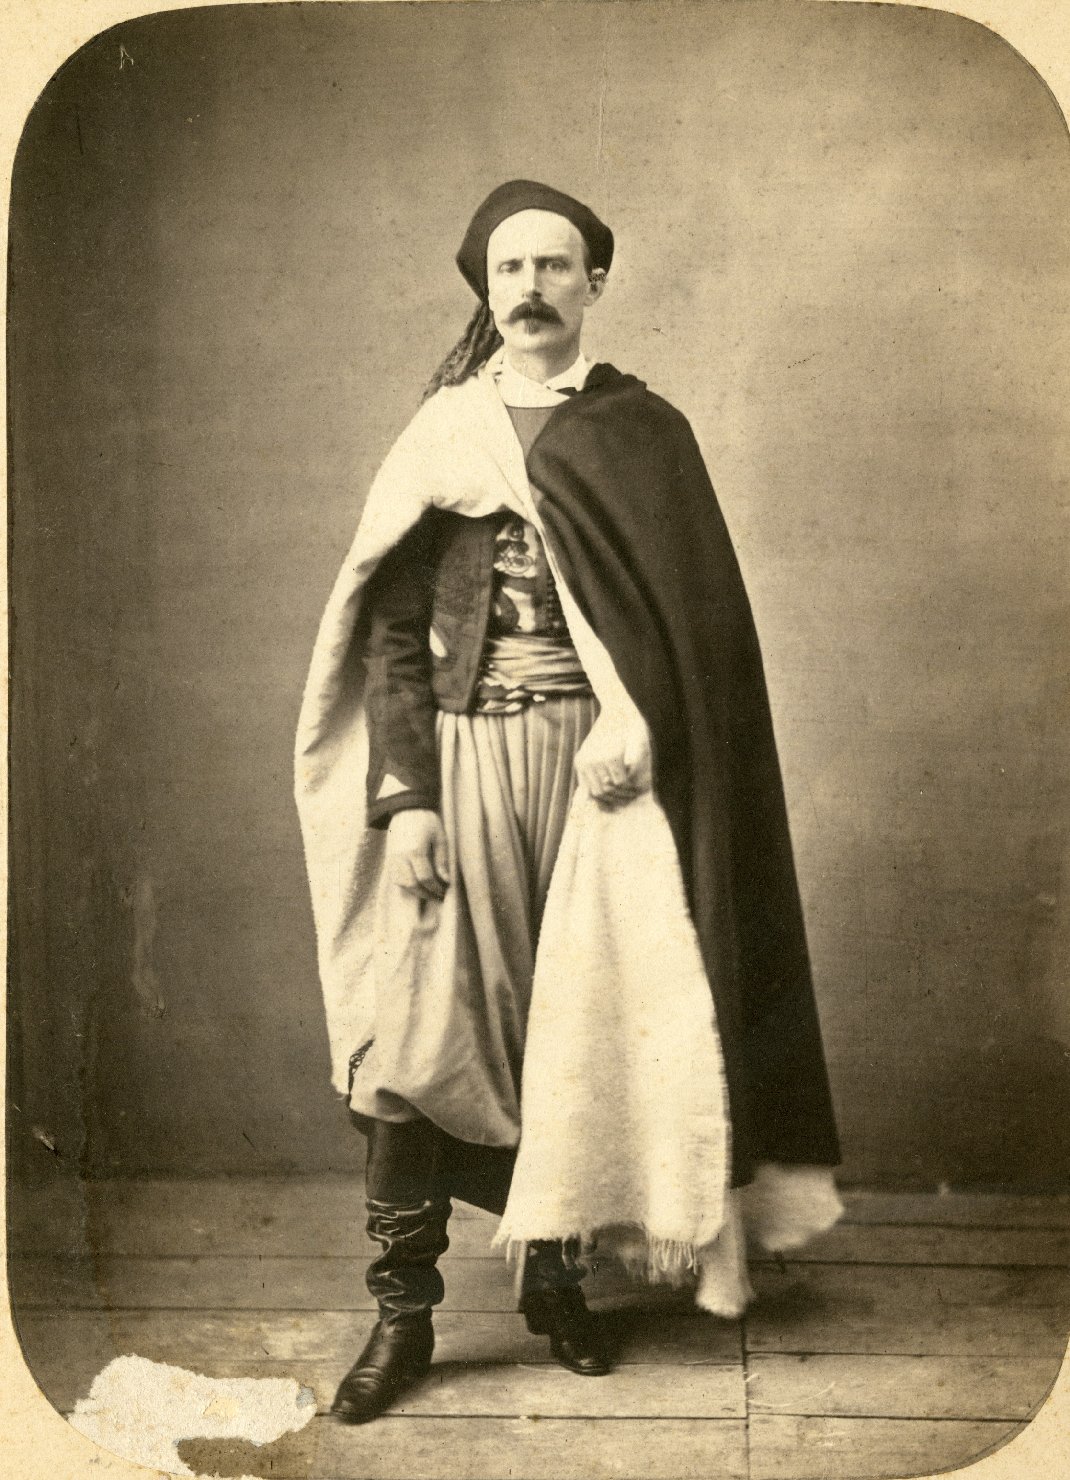 Ritratti fotografici - Spahis - Colonialismo - Abbigliamento - Abiti - Uniformi militari (positivo) di Fotografia Bertinazzi (XIX)